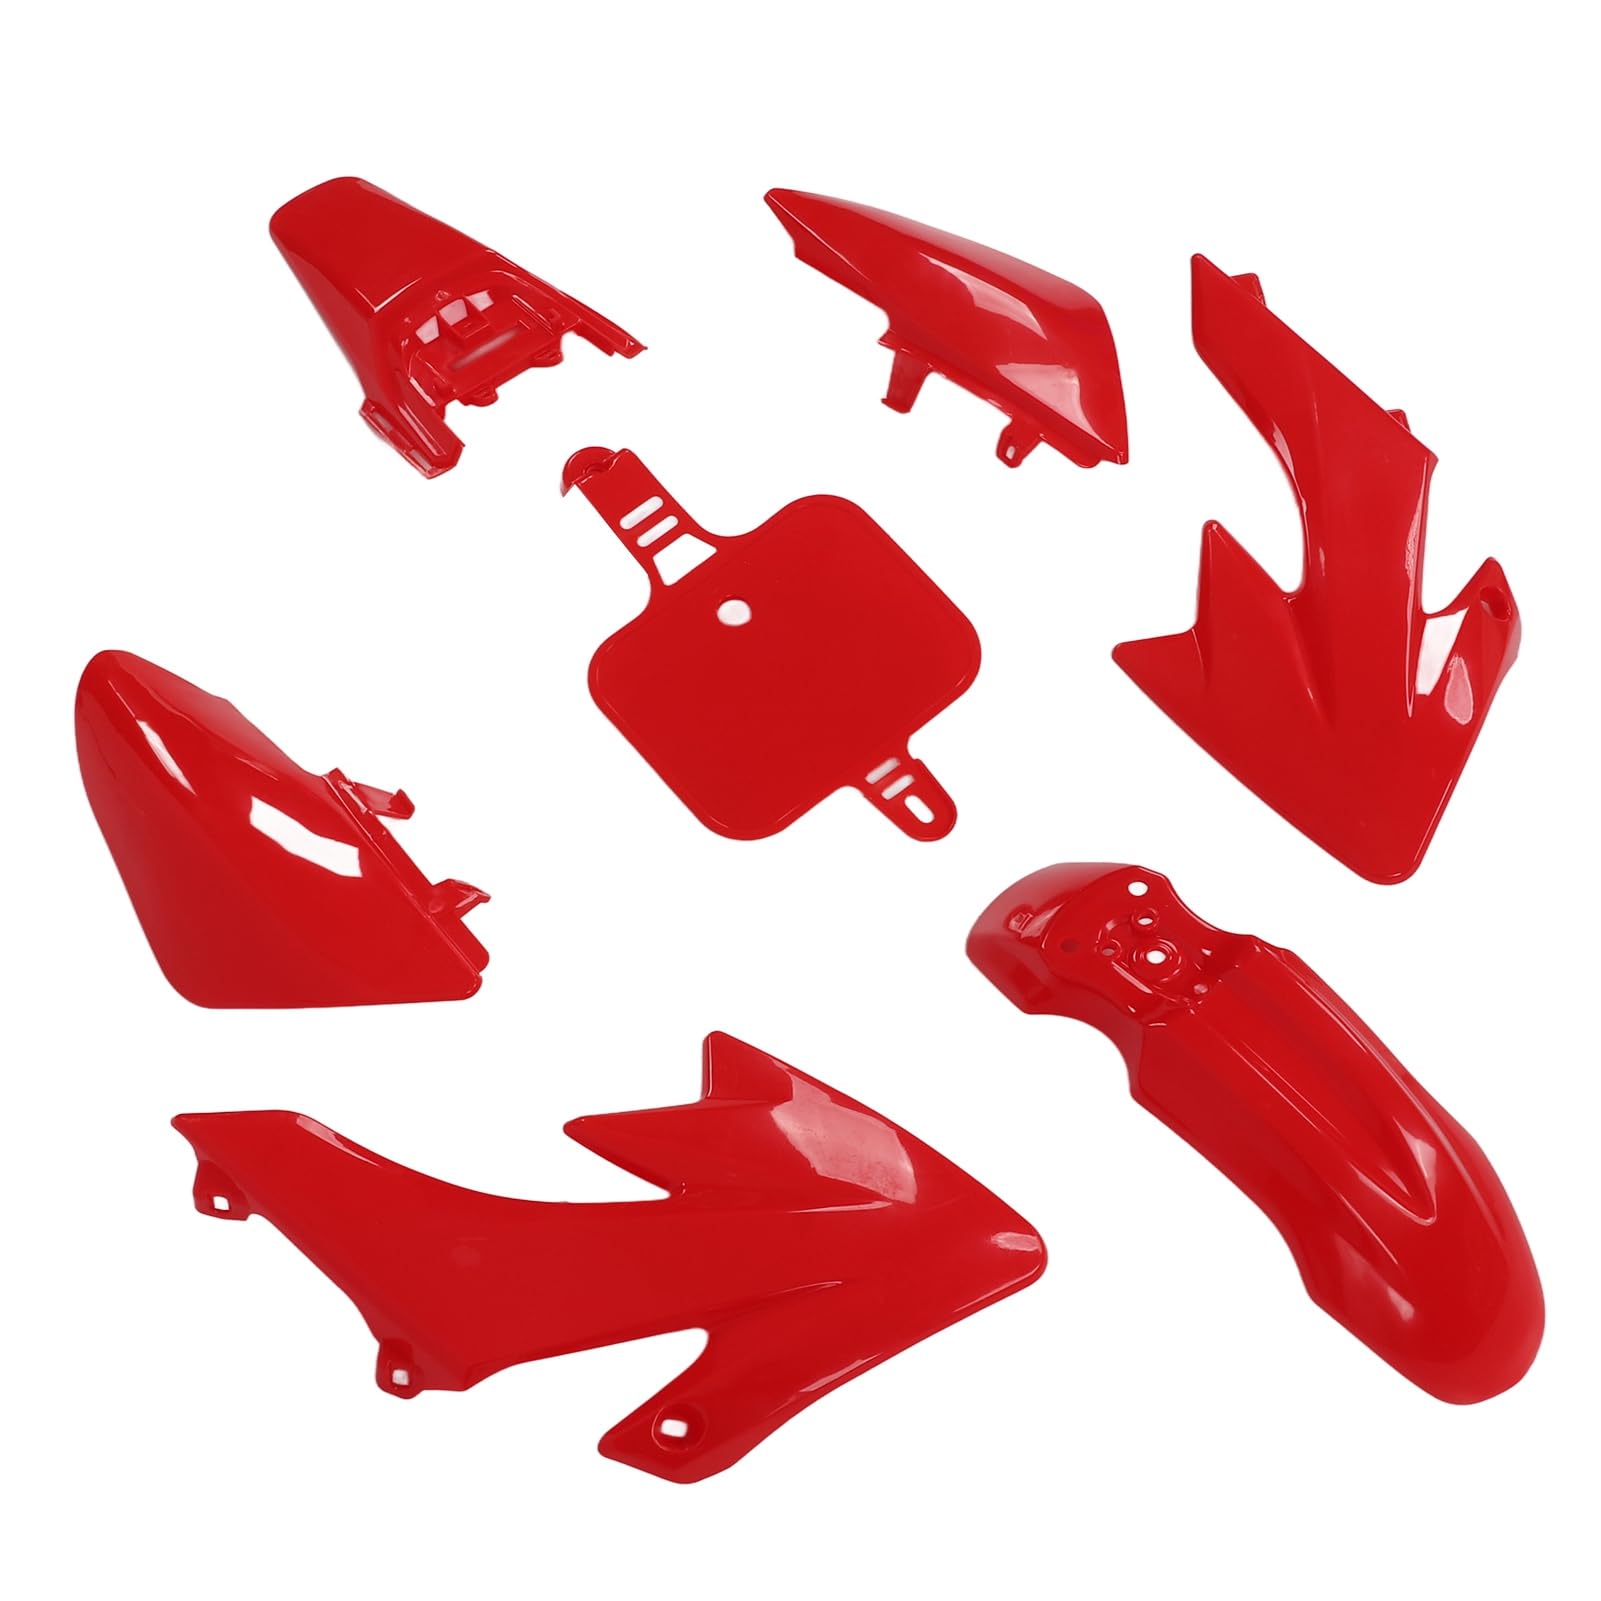 Kunststoff-Kotflügel-Kit, anspruchsvolle Verarbeitung, umfassender Schutz, hohe Praktikabilität, Kunststoff-Verkleidungs-Kit für Motorräder von Astibym